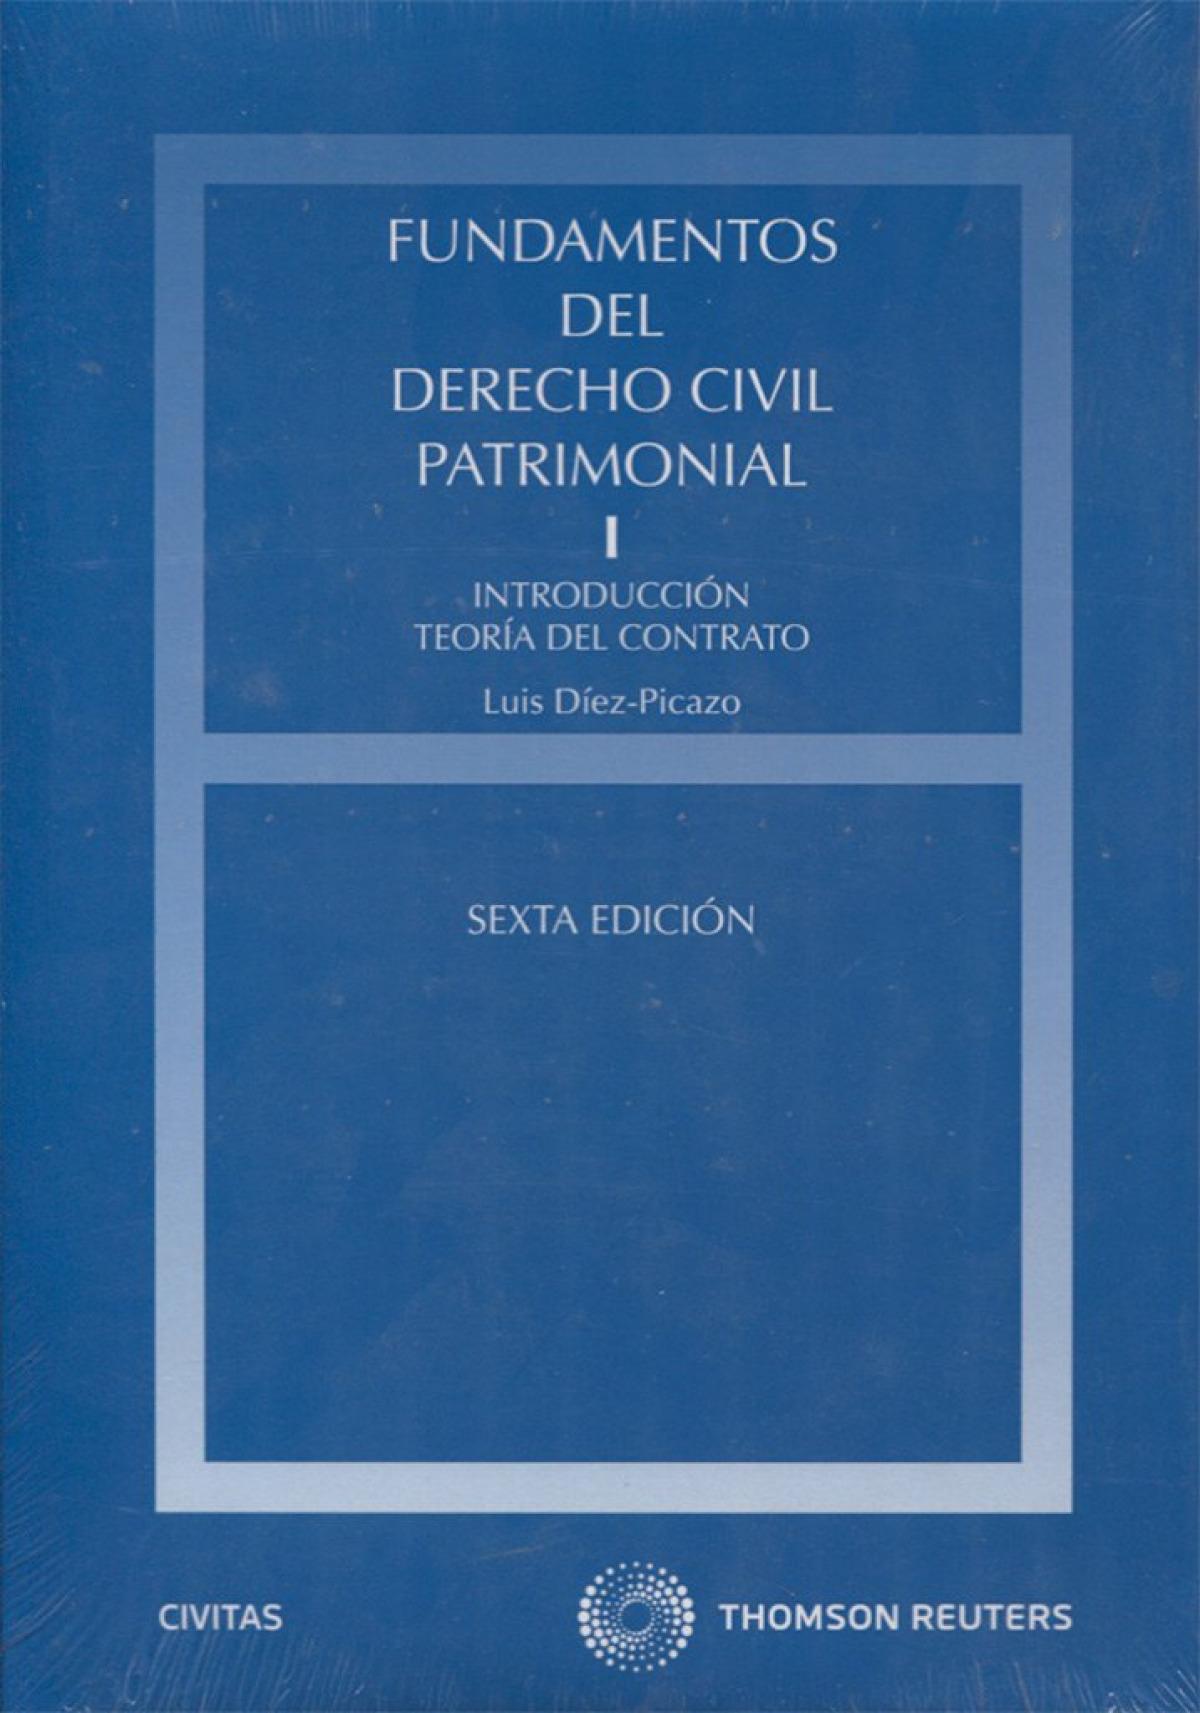 Fundamentos del Derecho Civil Patrimonial. I - Introducción teoría del contrato